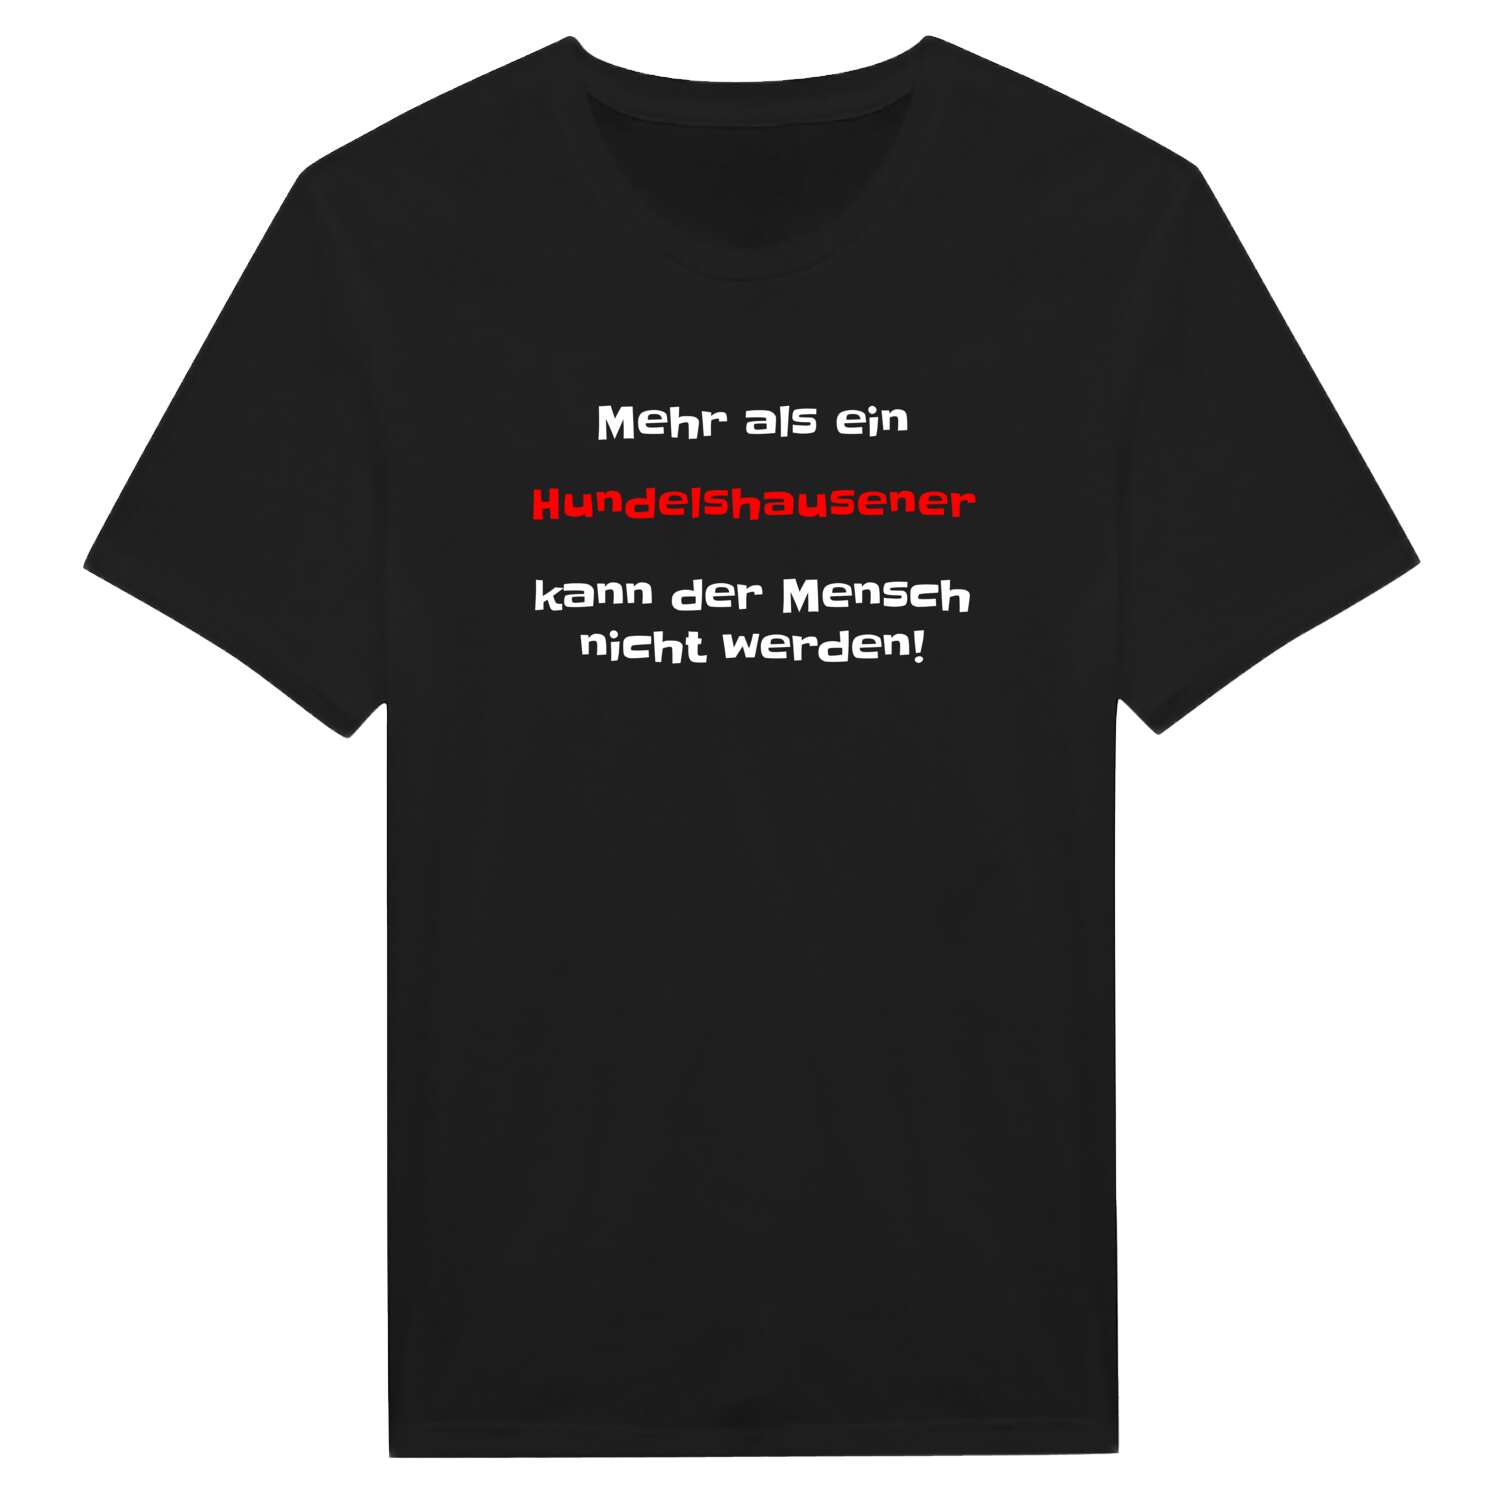 Hundelshausen T-Shirt »Mehr als ein«